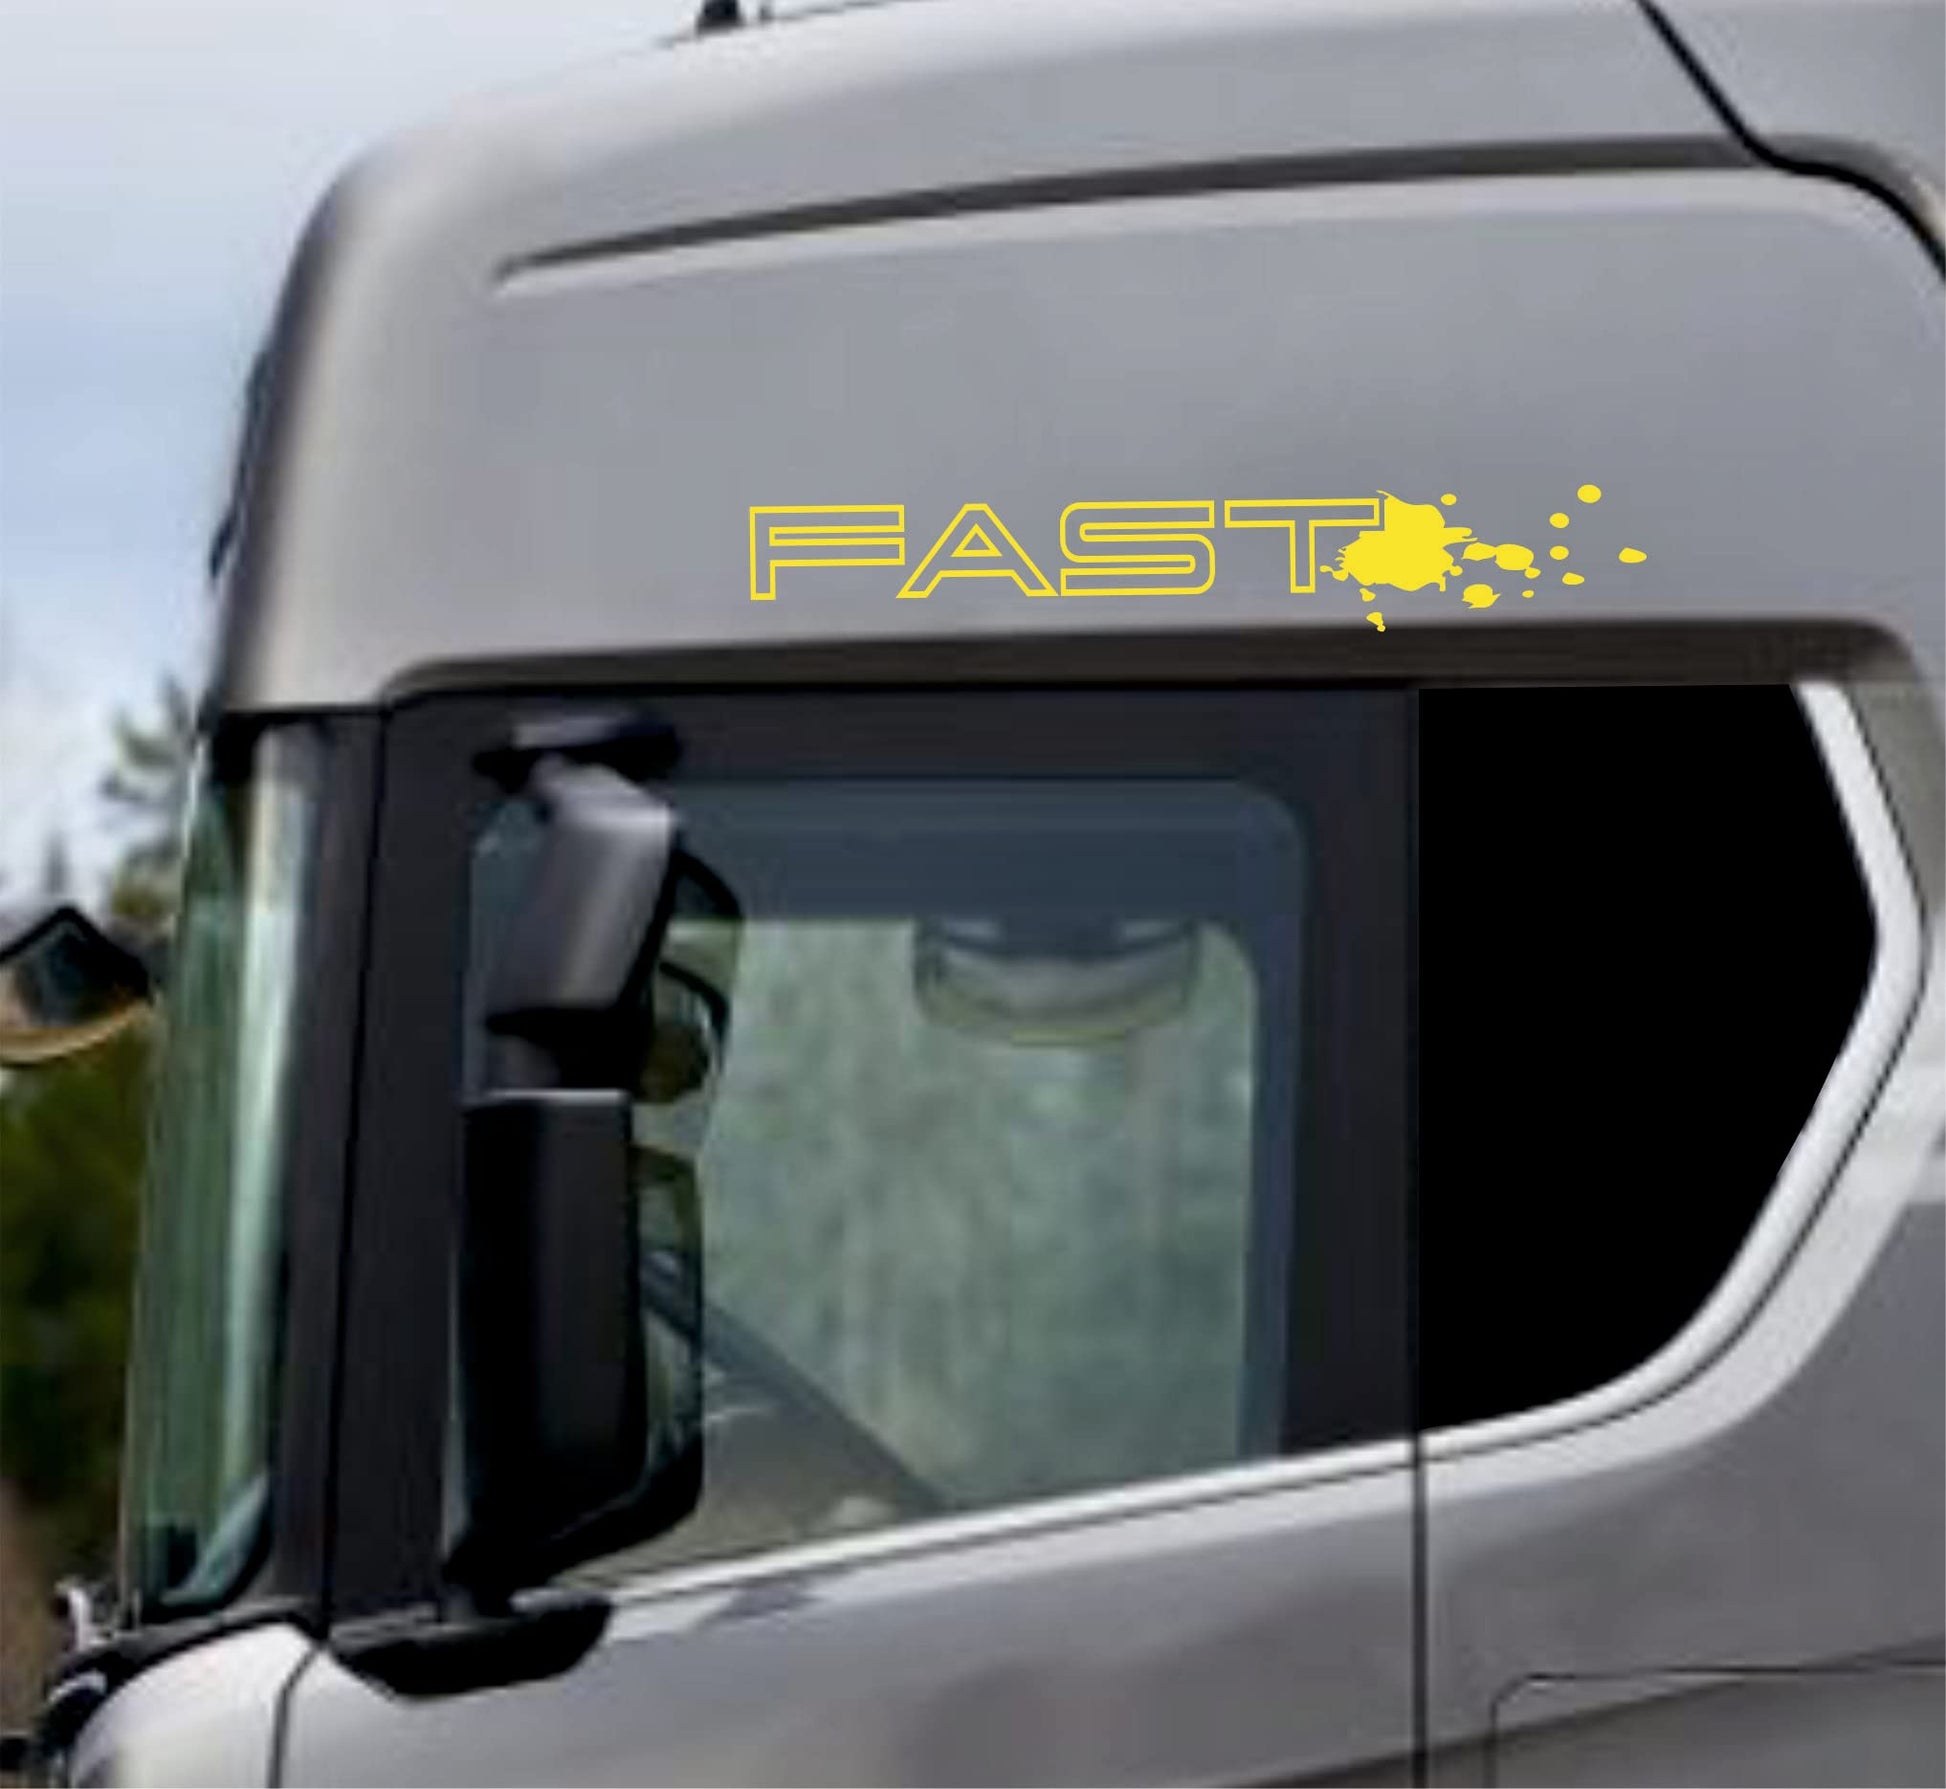 DualColorStampe Adesivi Compatibili con Scania Daf Iveco Man Camion accessori camion stickers camion finestrino fast COD.0304 a €21.99 solo da DualColorStampe